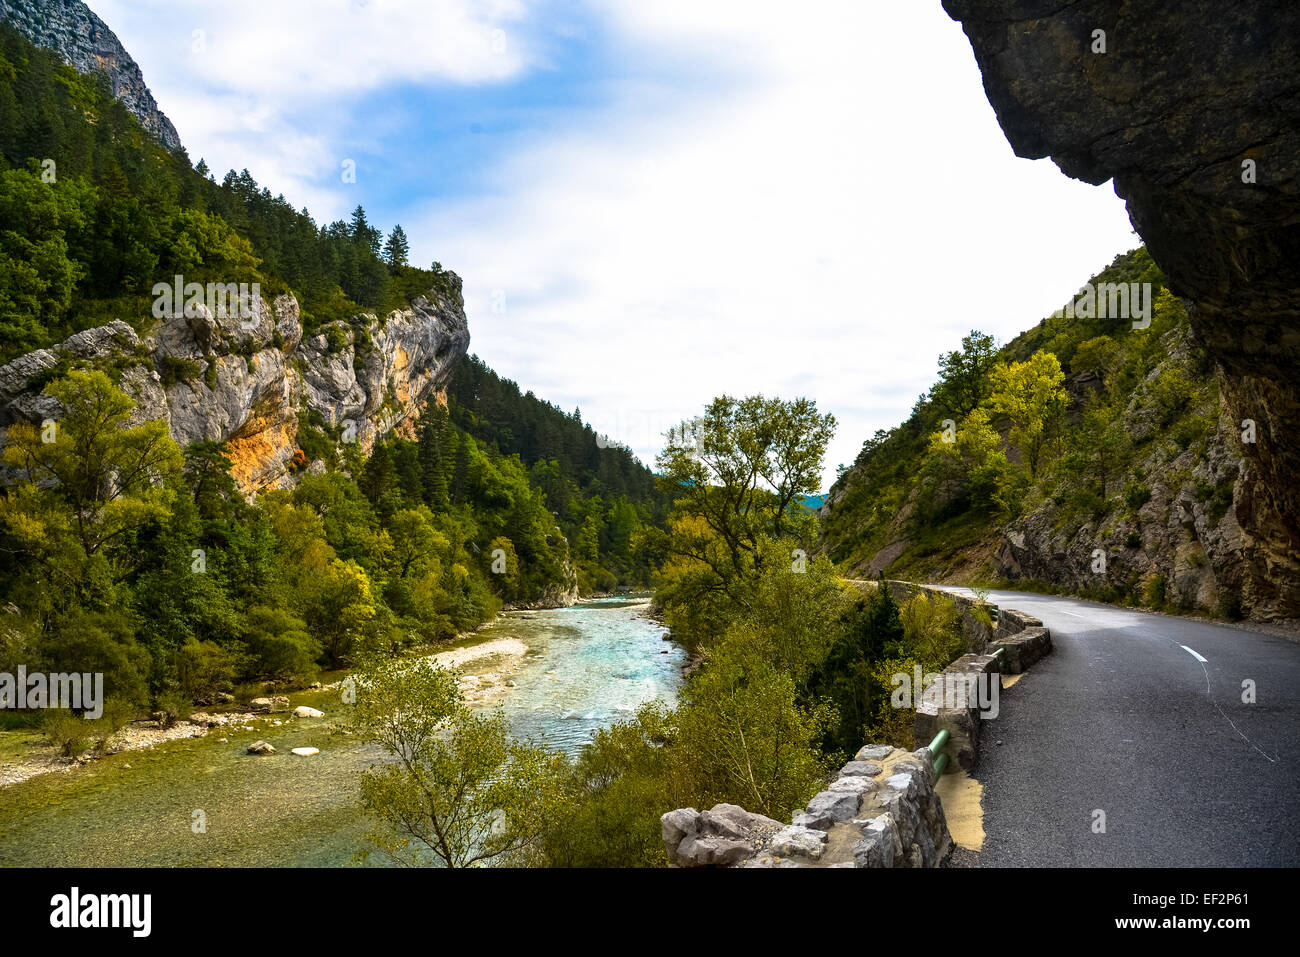 Gorges de Verdon in alta Provenza Francia Foto Stock